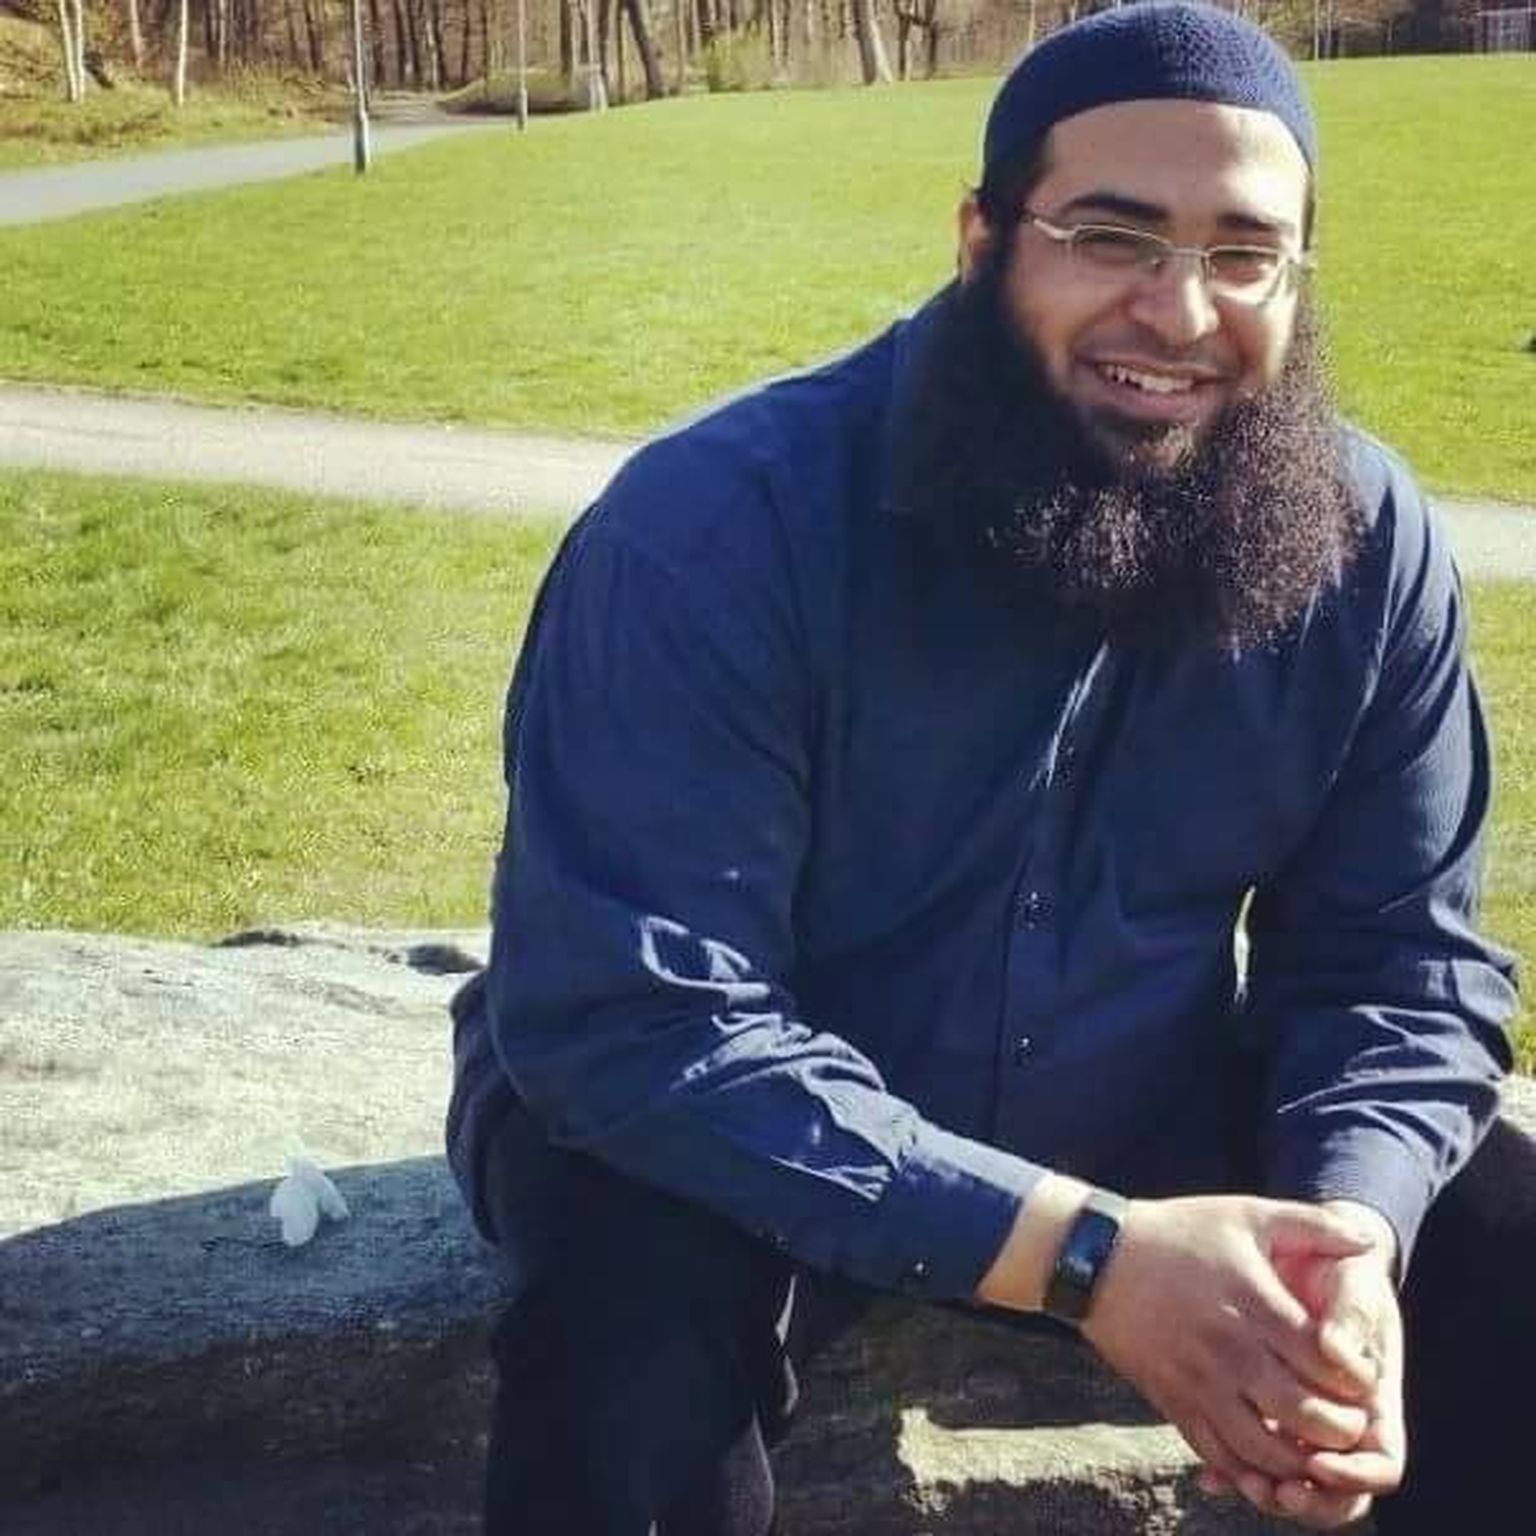 Göteborgis suleti hiljuti lastepäevahoid, mille tegevusega oli seotud tuntud islamist Anas Khalifa. Khalifa on levitanud oma sotsiaalmeediakanalites pikka aega ekstremistlikke sõnumeid ning Rootsi kaitsekõrgkooli raportis «Salafismi ja salafistliku džihadismi vahel» on talle lausa pühendatud omaette peatükk.